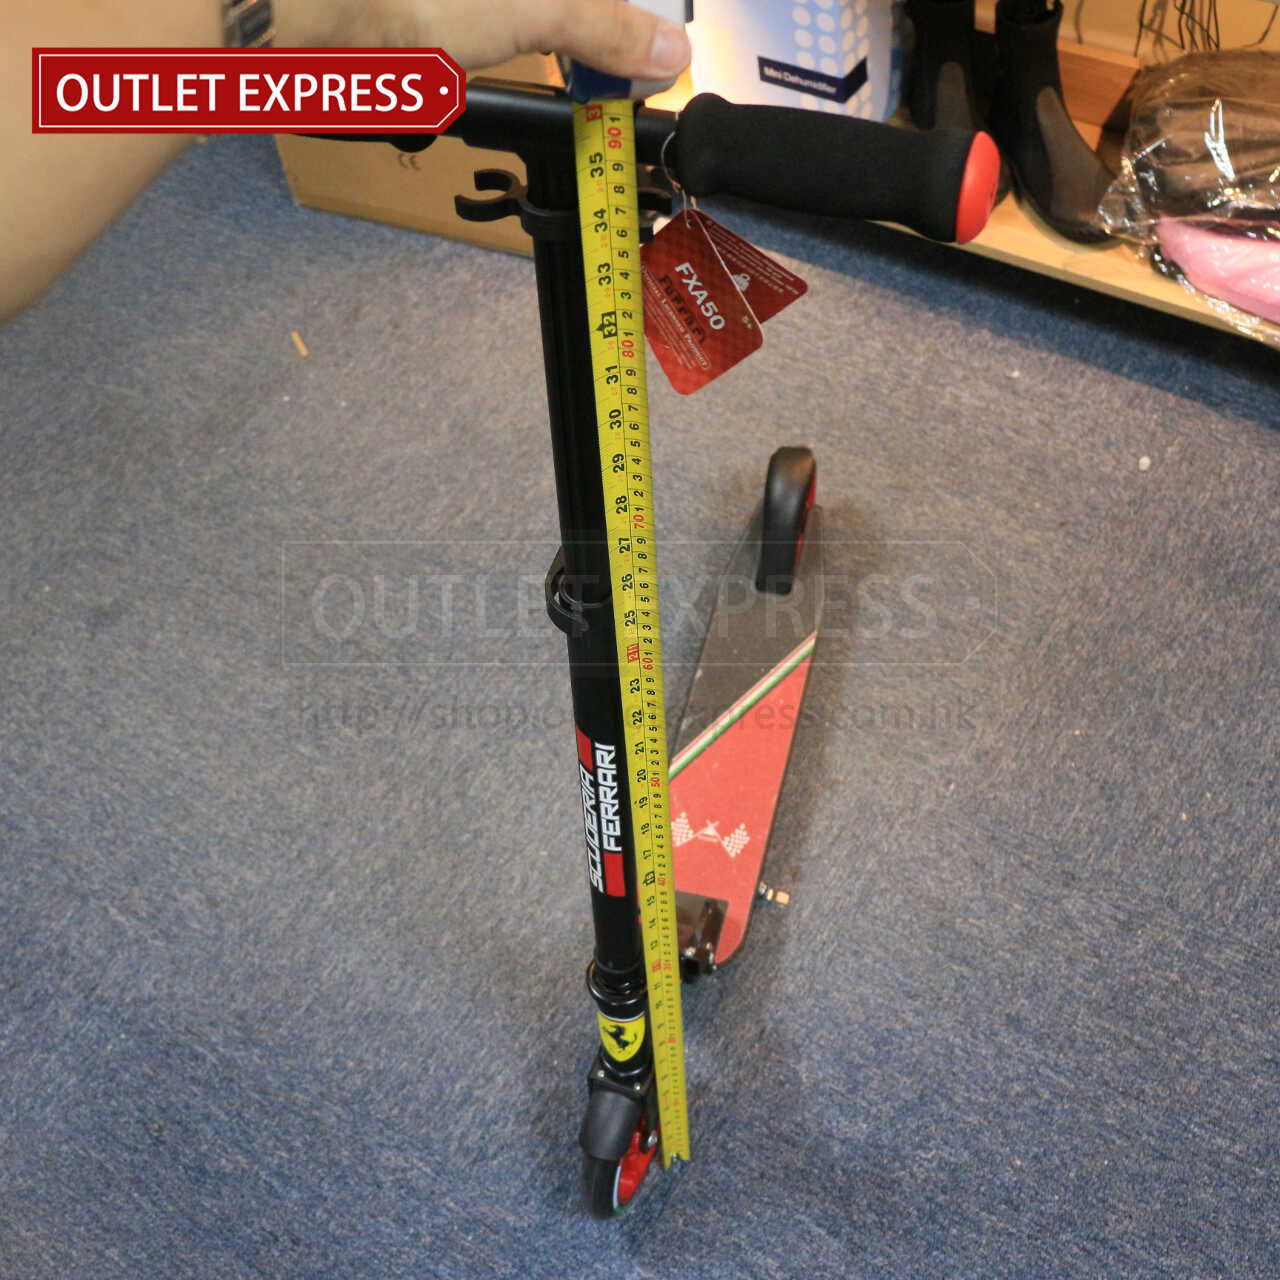 法拉利滑板車高級款 | FERRARI SCOOTER  - Outlet Express HK生活百貨城實拍相片